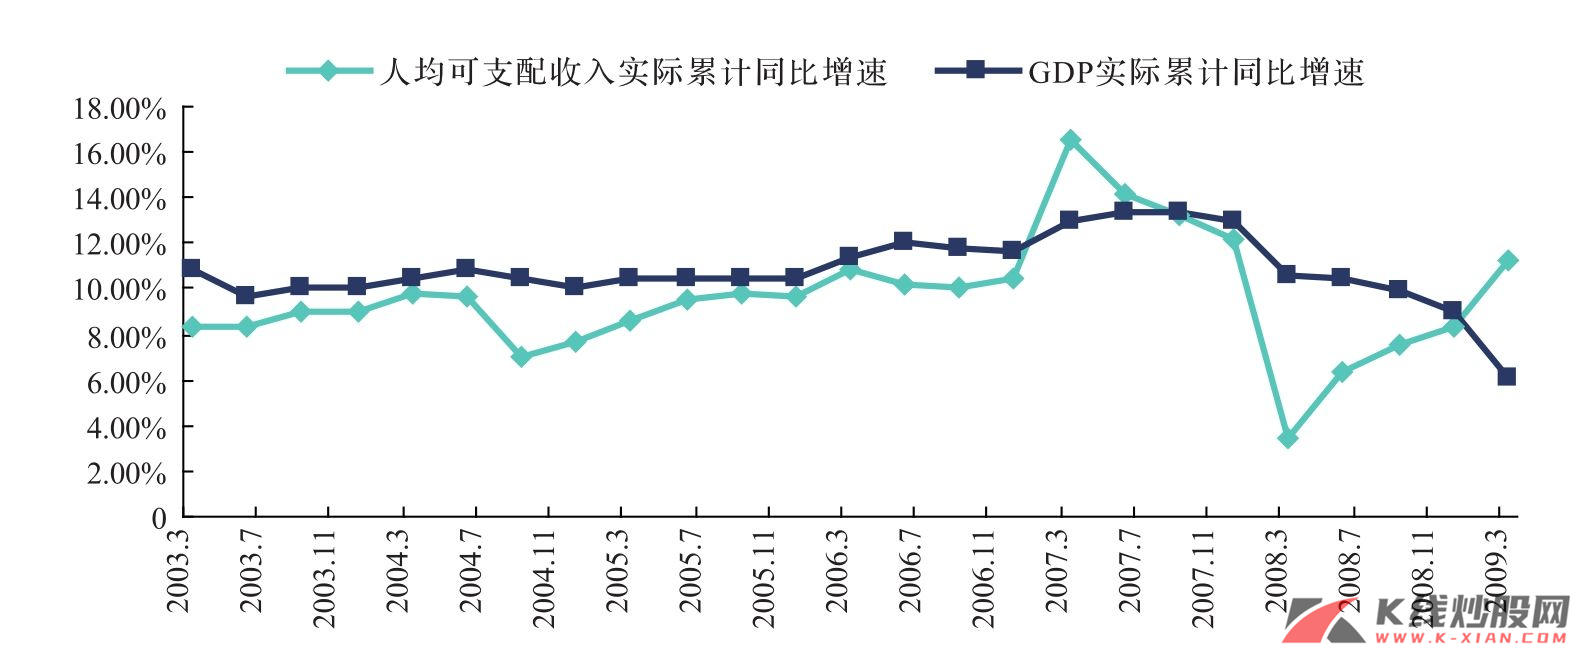 中国可支配收入与实际GDP的变化趋势